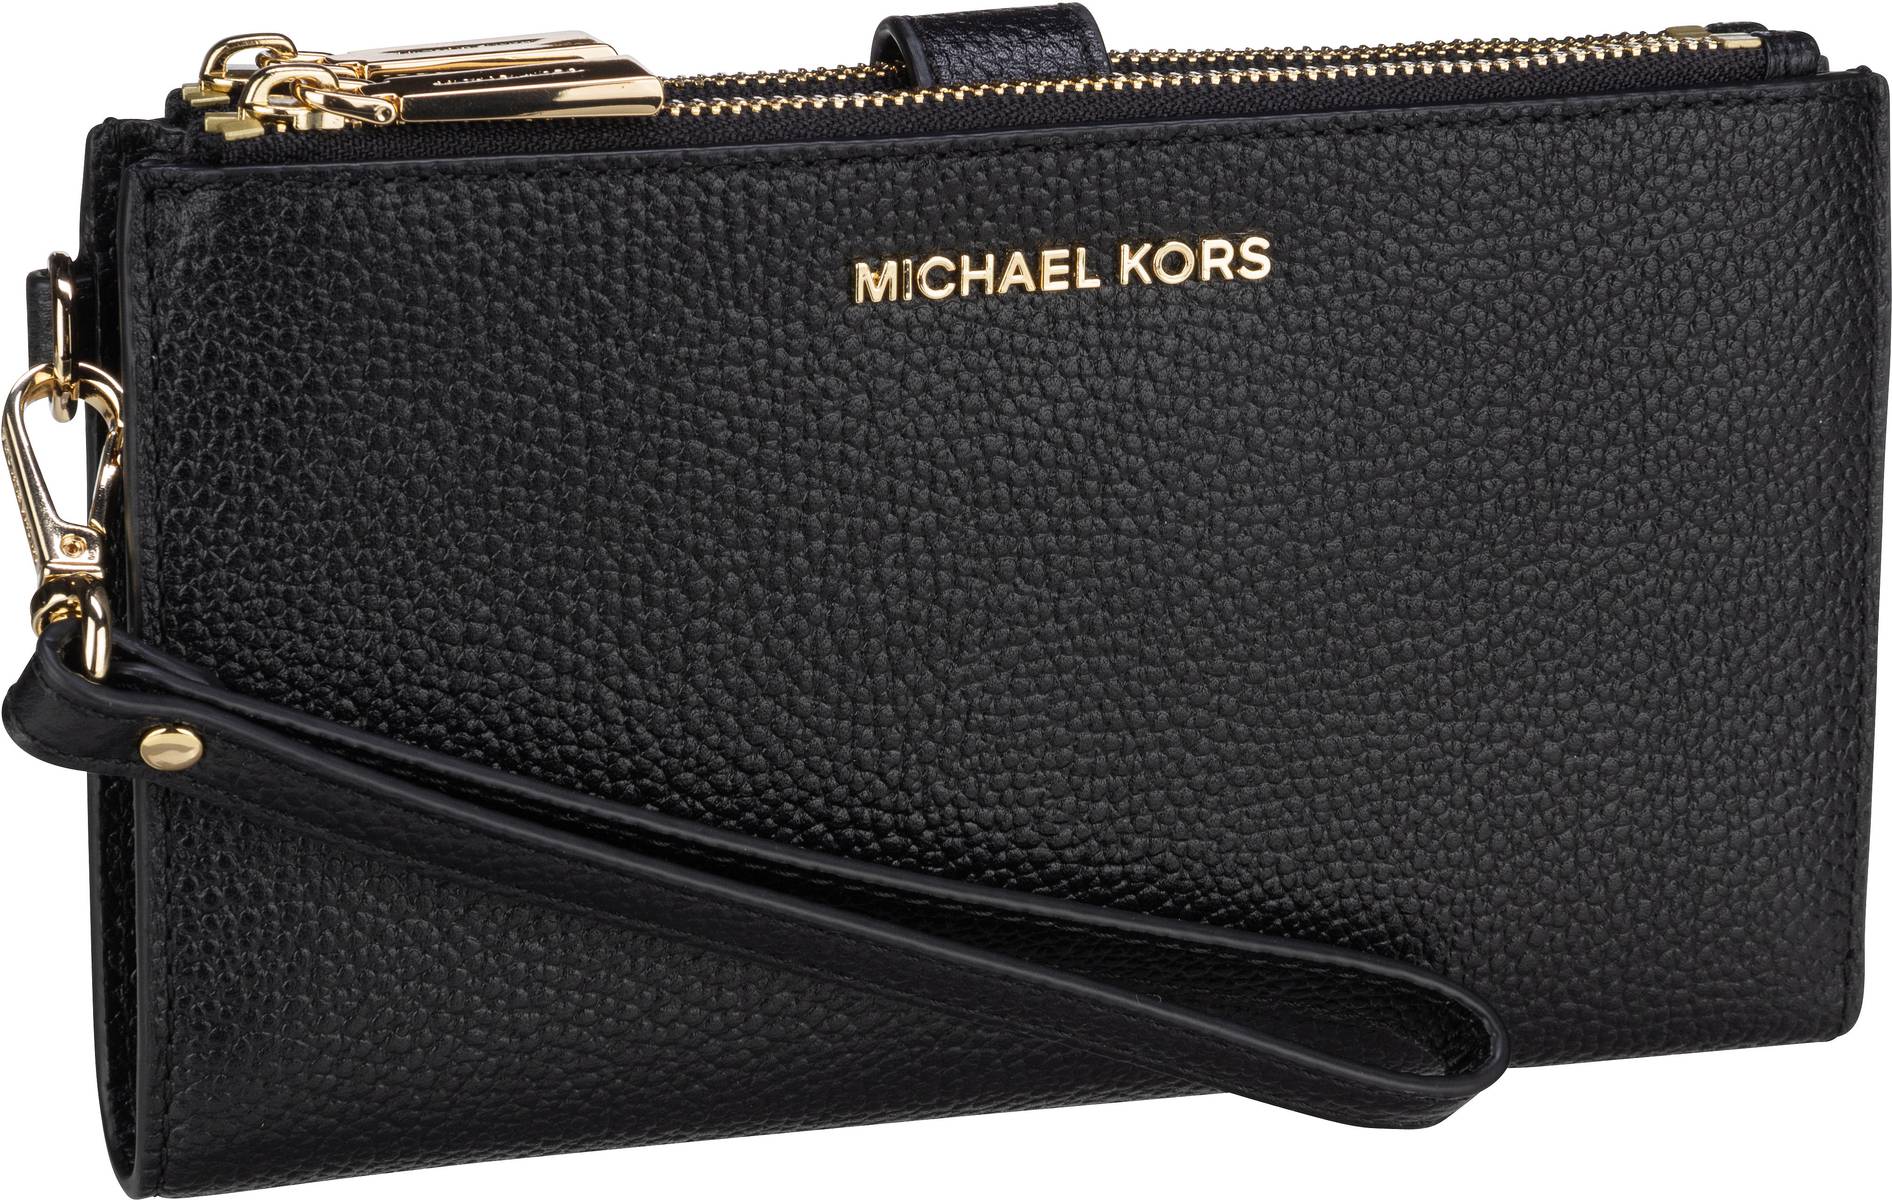 Michael Kors Jet Set DoubleZip Wristlet  in Black/Gold (0.4 Liter), Handtasche